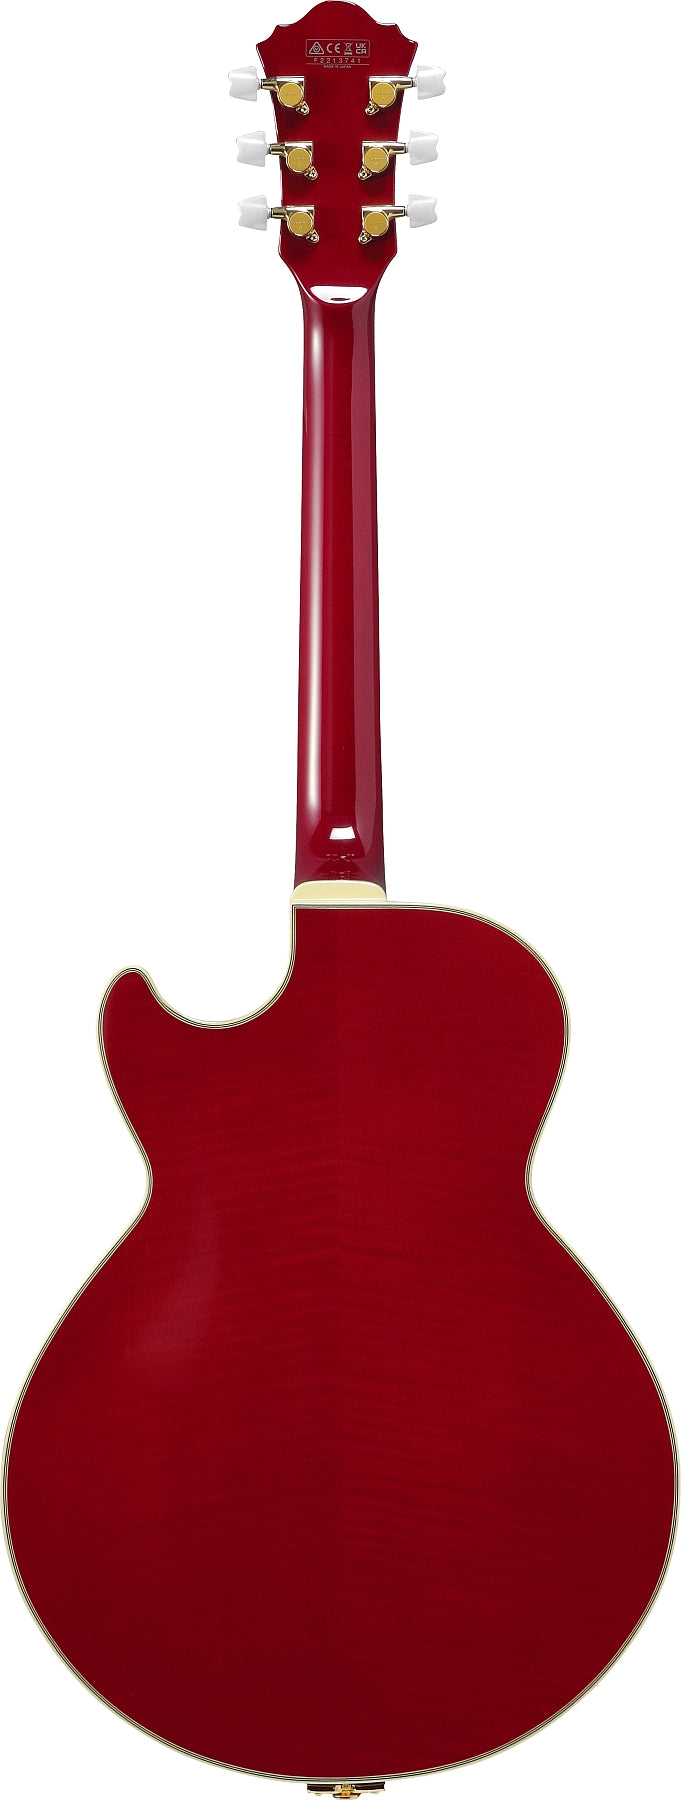 Ibanez GBSP10 Signature Series George Benson Signature Guitare électrique (Rouge)